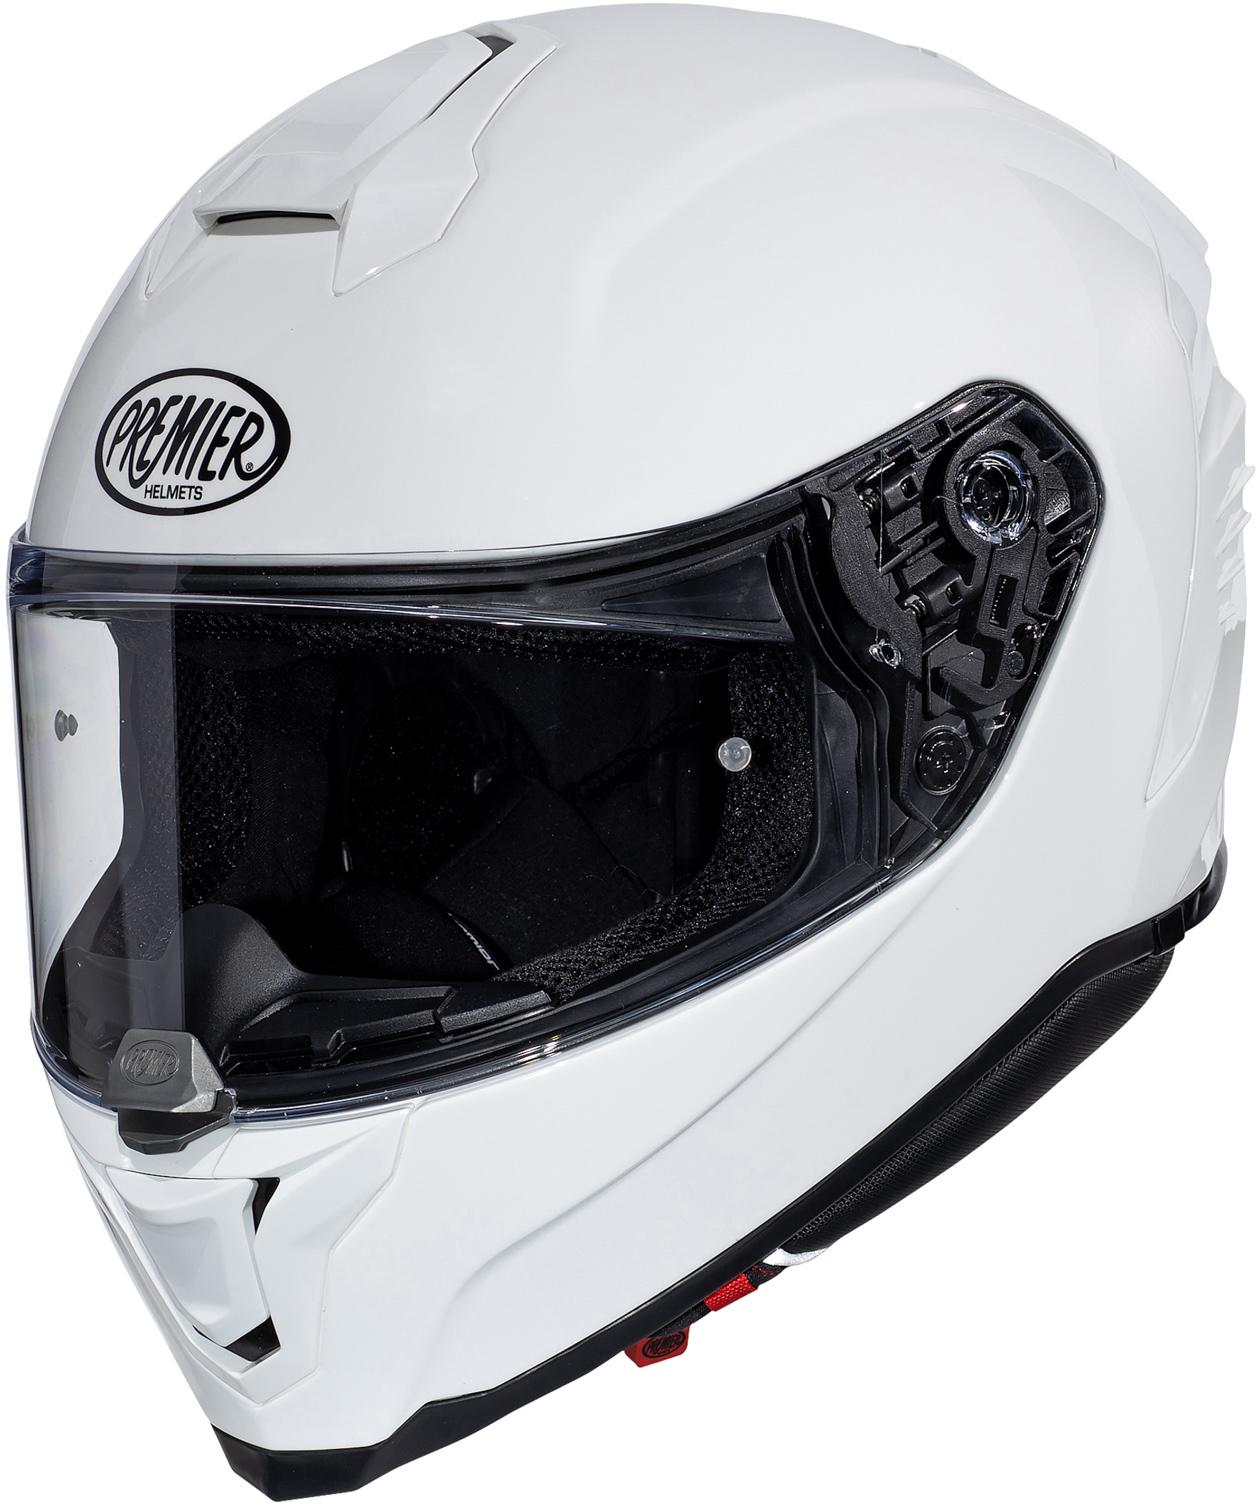 Premier Hyper Full Face Motorcycle Helmet - White, L